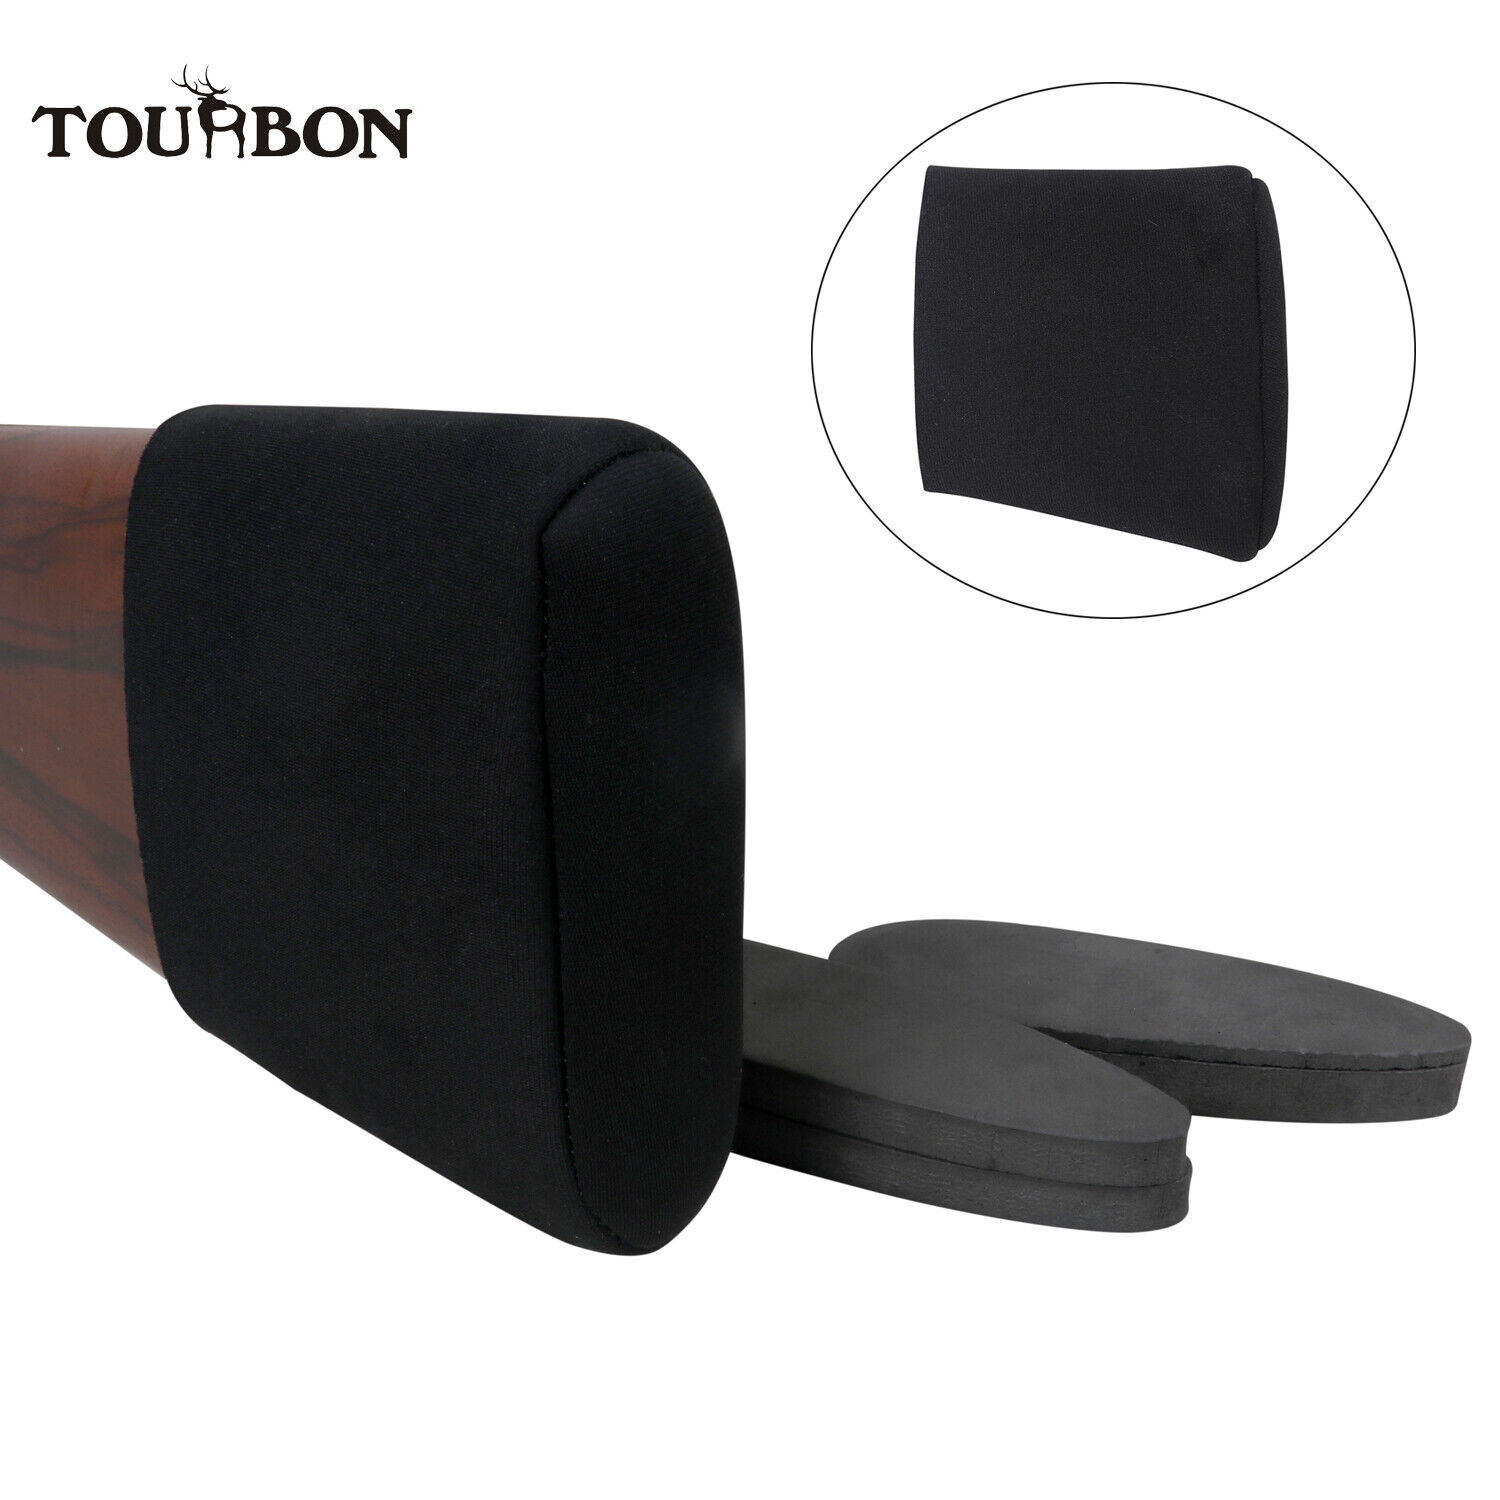 TOURBON Adjustable Shotgun Rifle Slip-on Recoil Pad Buttstock Holder Cover Black